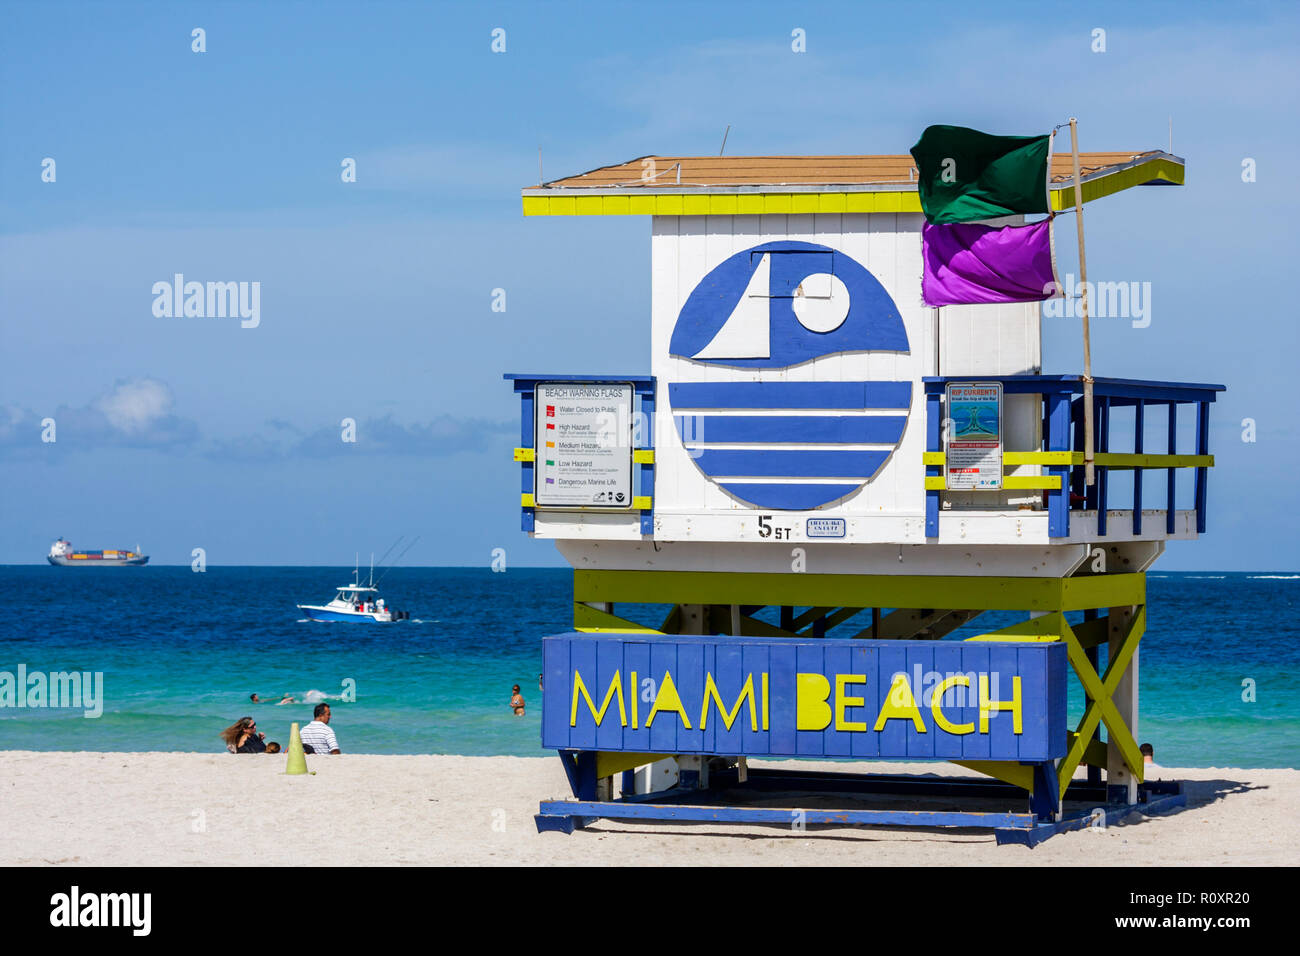 Miami Beach Florida, Atlantik, Wasser, öffentlicher Strand,  Rettungsschwimmer Stand, Station, Ufer, Sicherheit, Warnflagge, lila, grün,  gefährliche Unterwasserwelt, FL090607142 Stockfotografie - Alamy